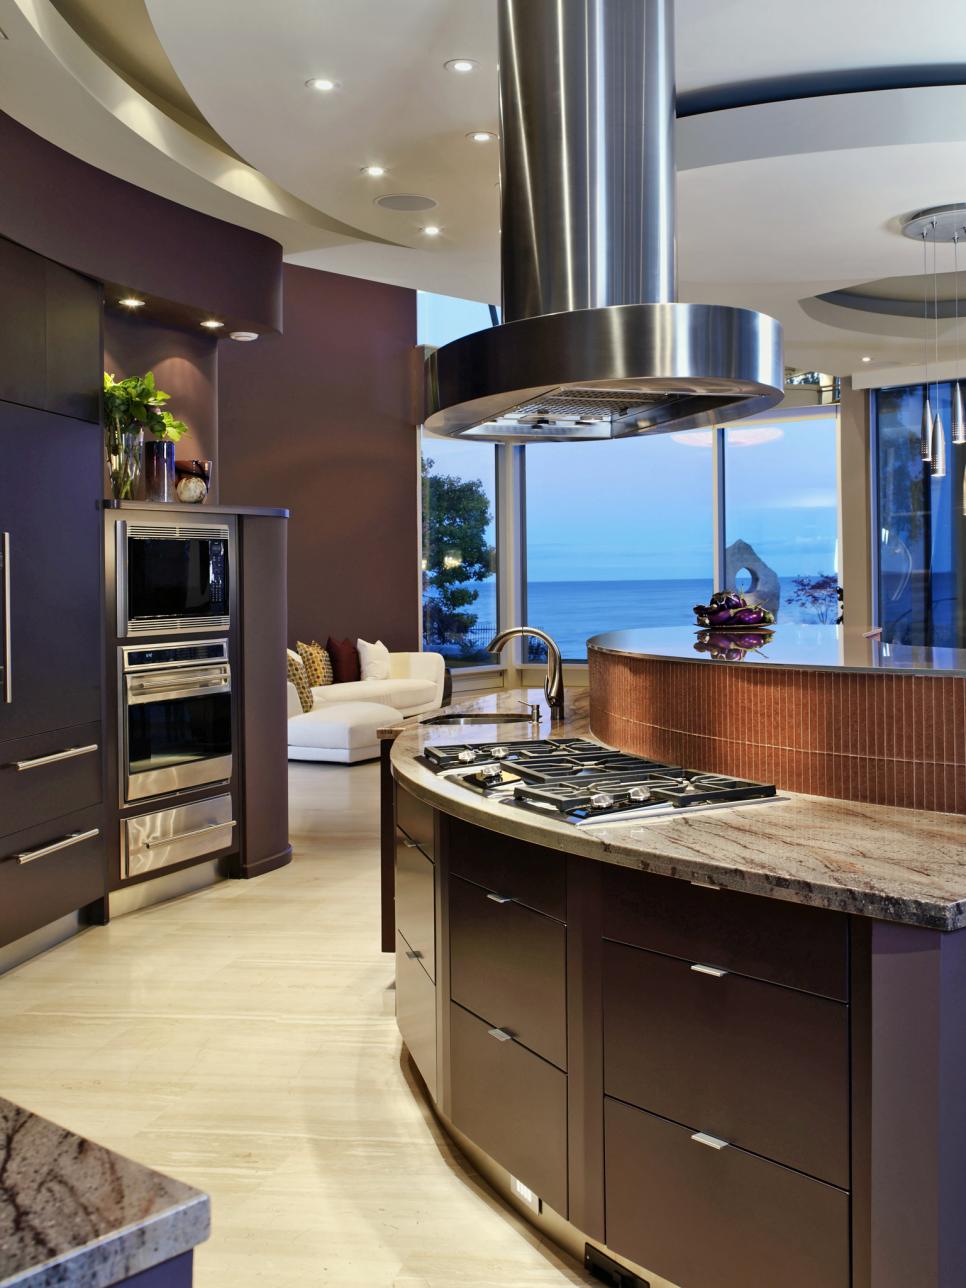 Modern Kitchen With Curving Dark Wood Cabinets | HGTV